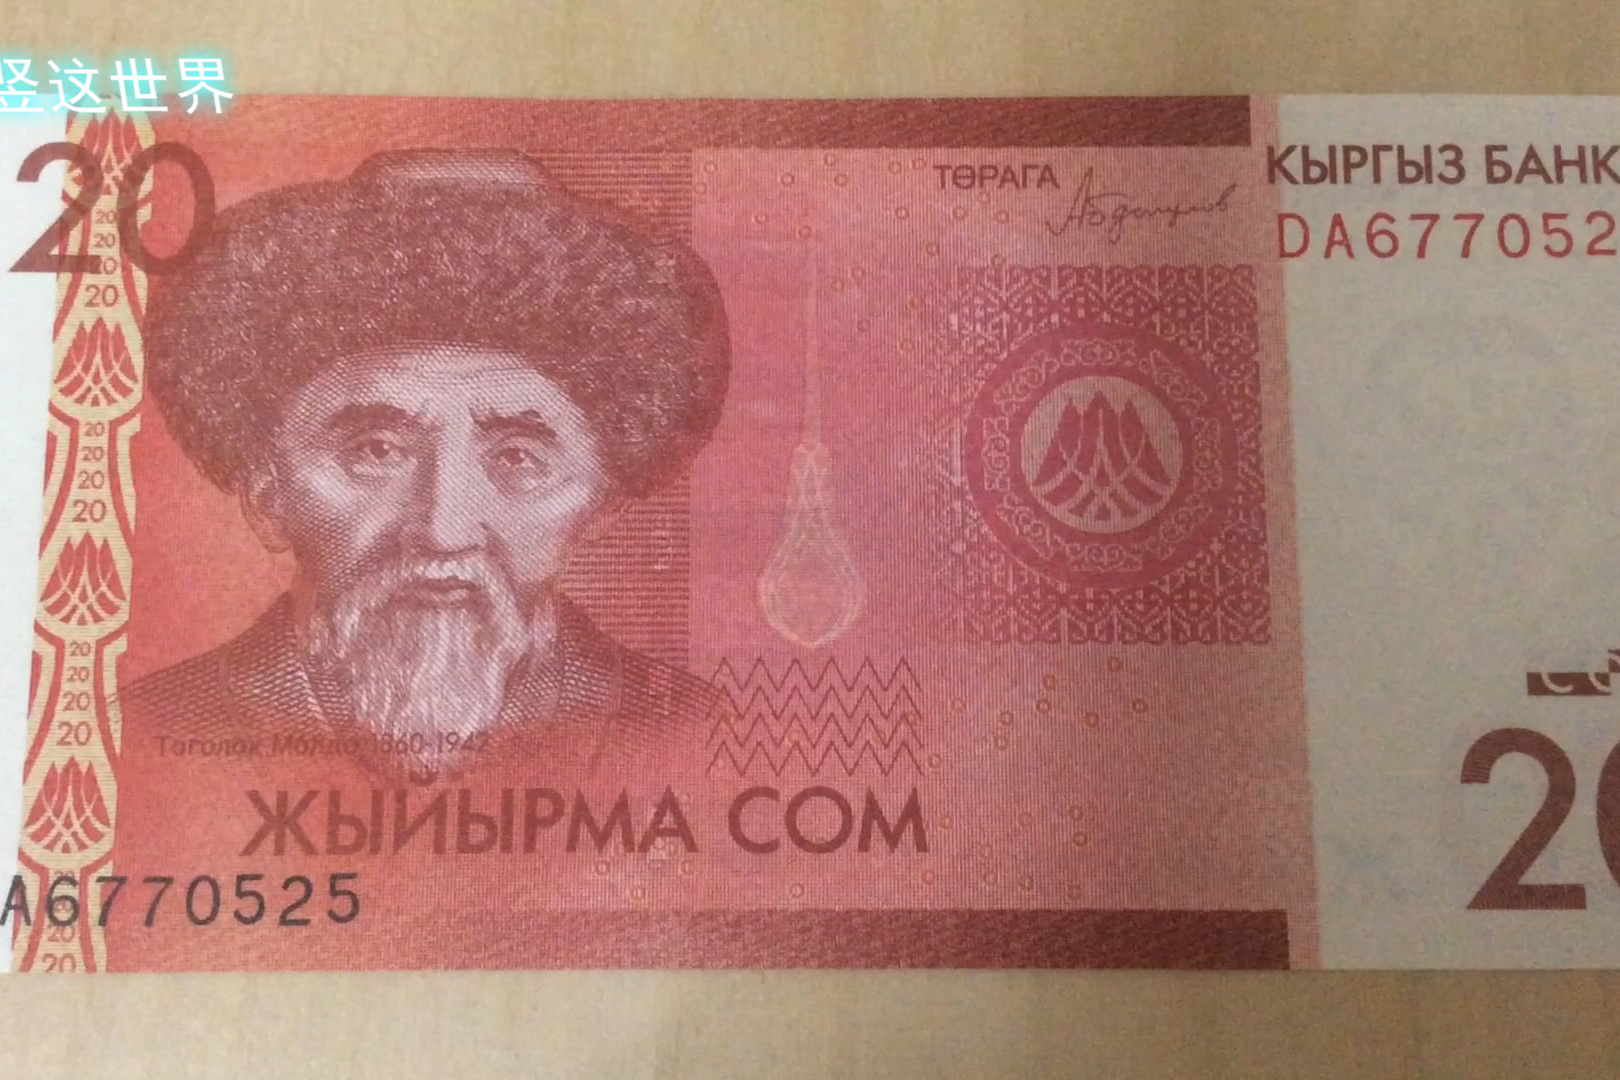 吉尔吉斯纸币图片